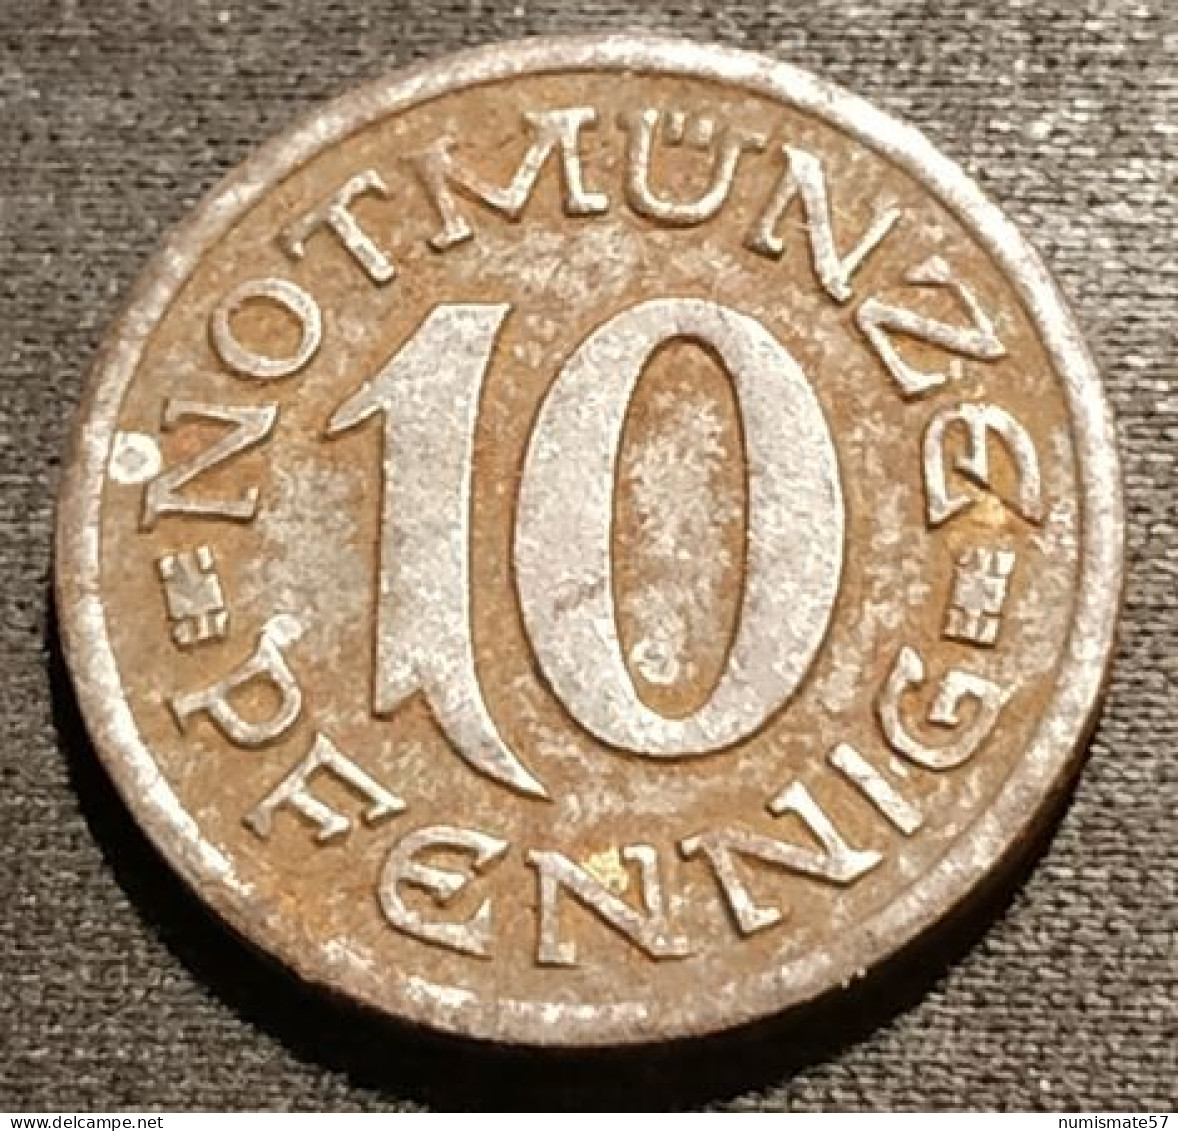 ALLEMAGNE - GERMANY - 10 Pfennig Aachen 1920 - Funck# 1.1 - 10 Rentenpfennig & 10 Reichspfennig